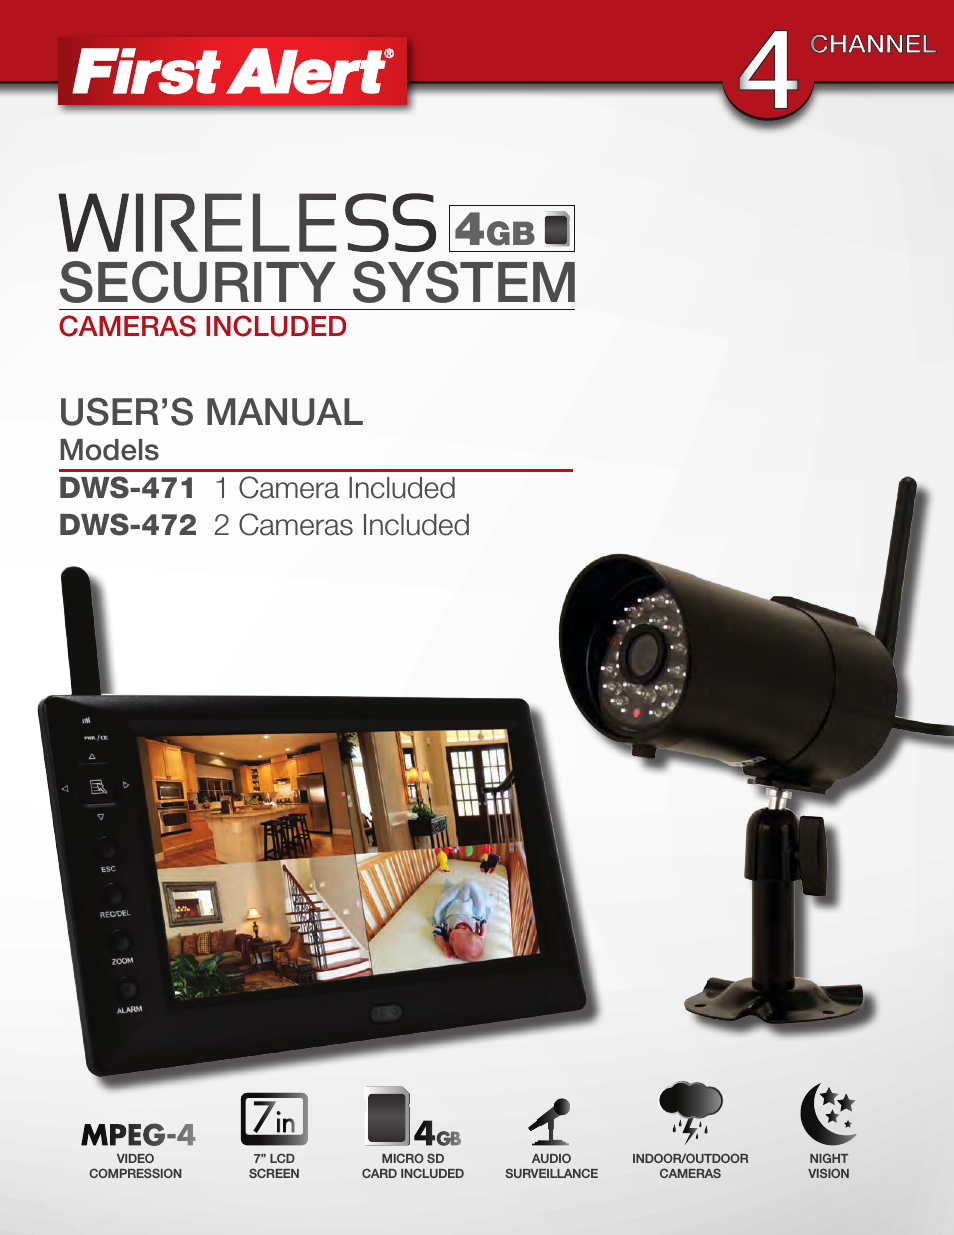 Wireless 4GB Security System DWS-472